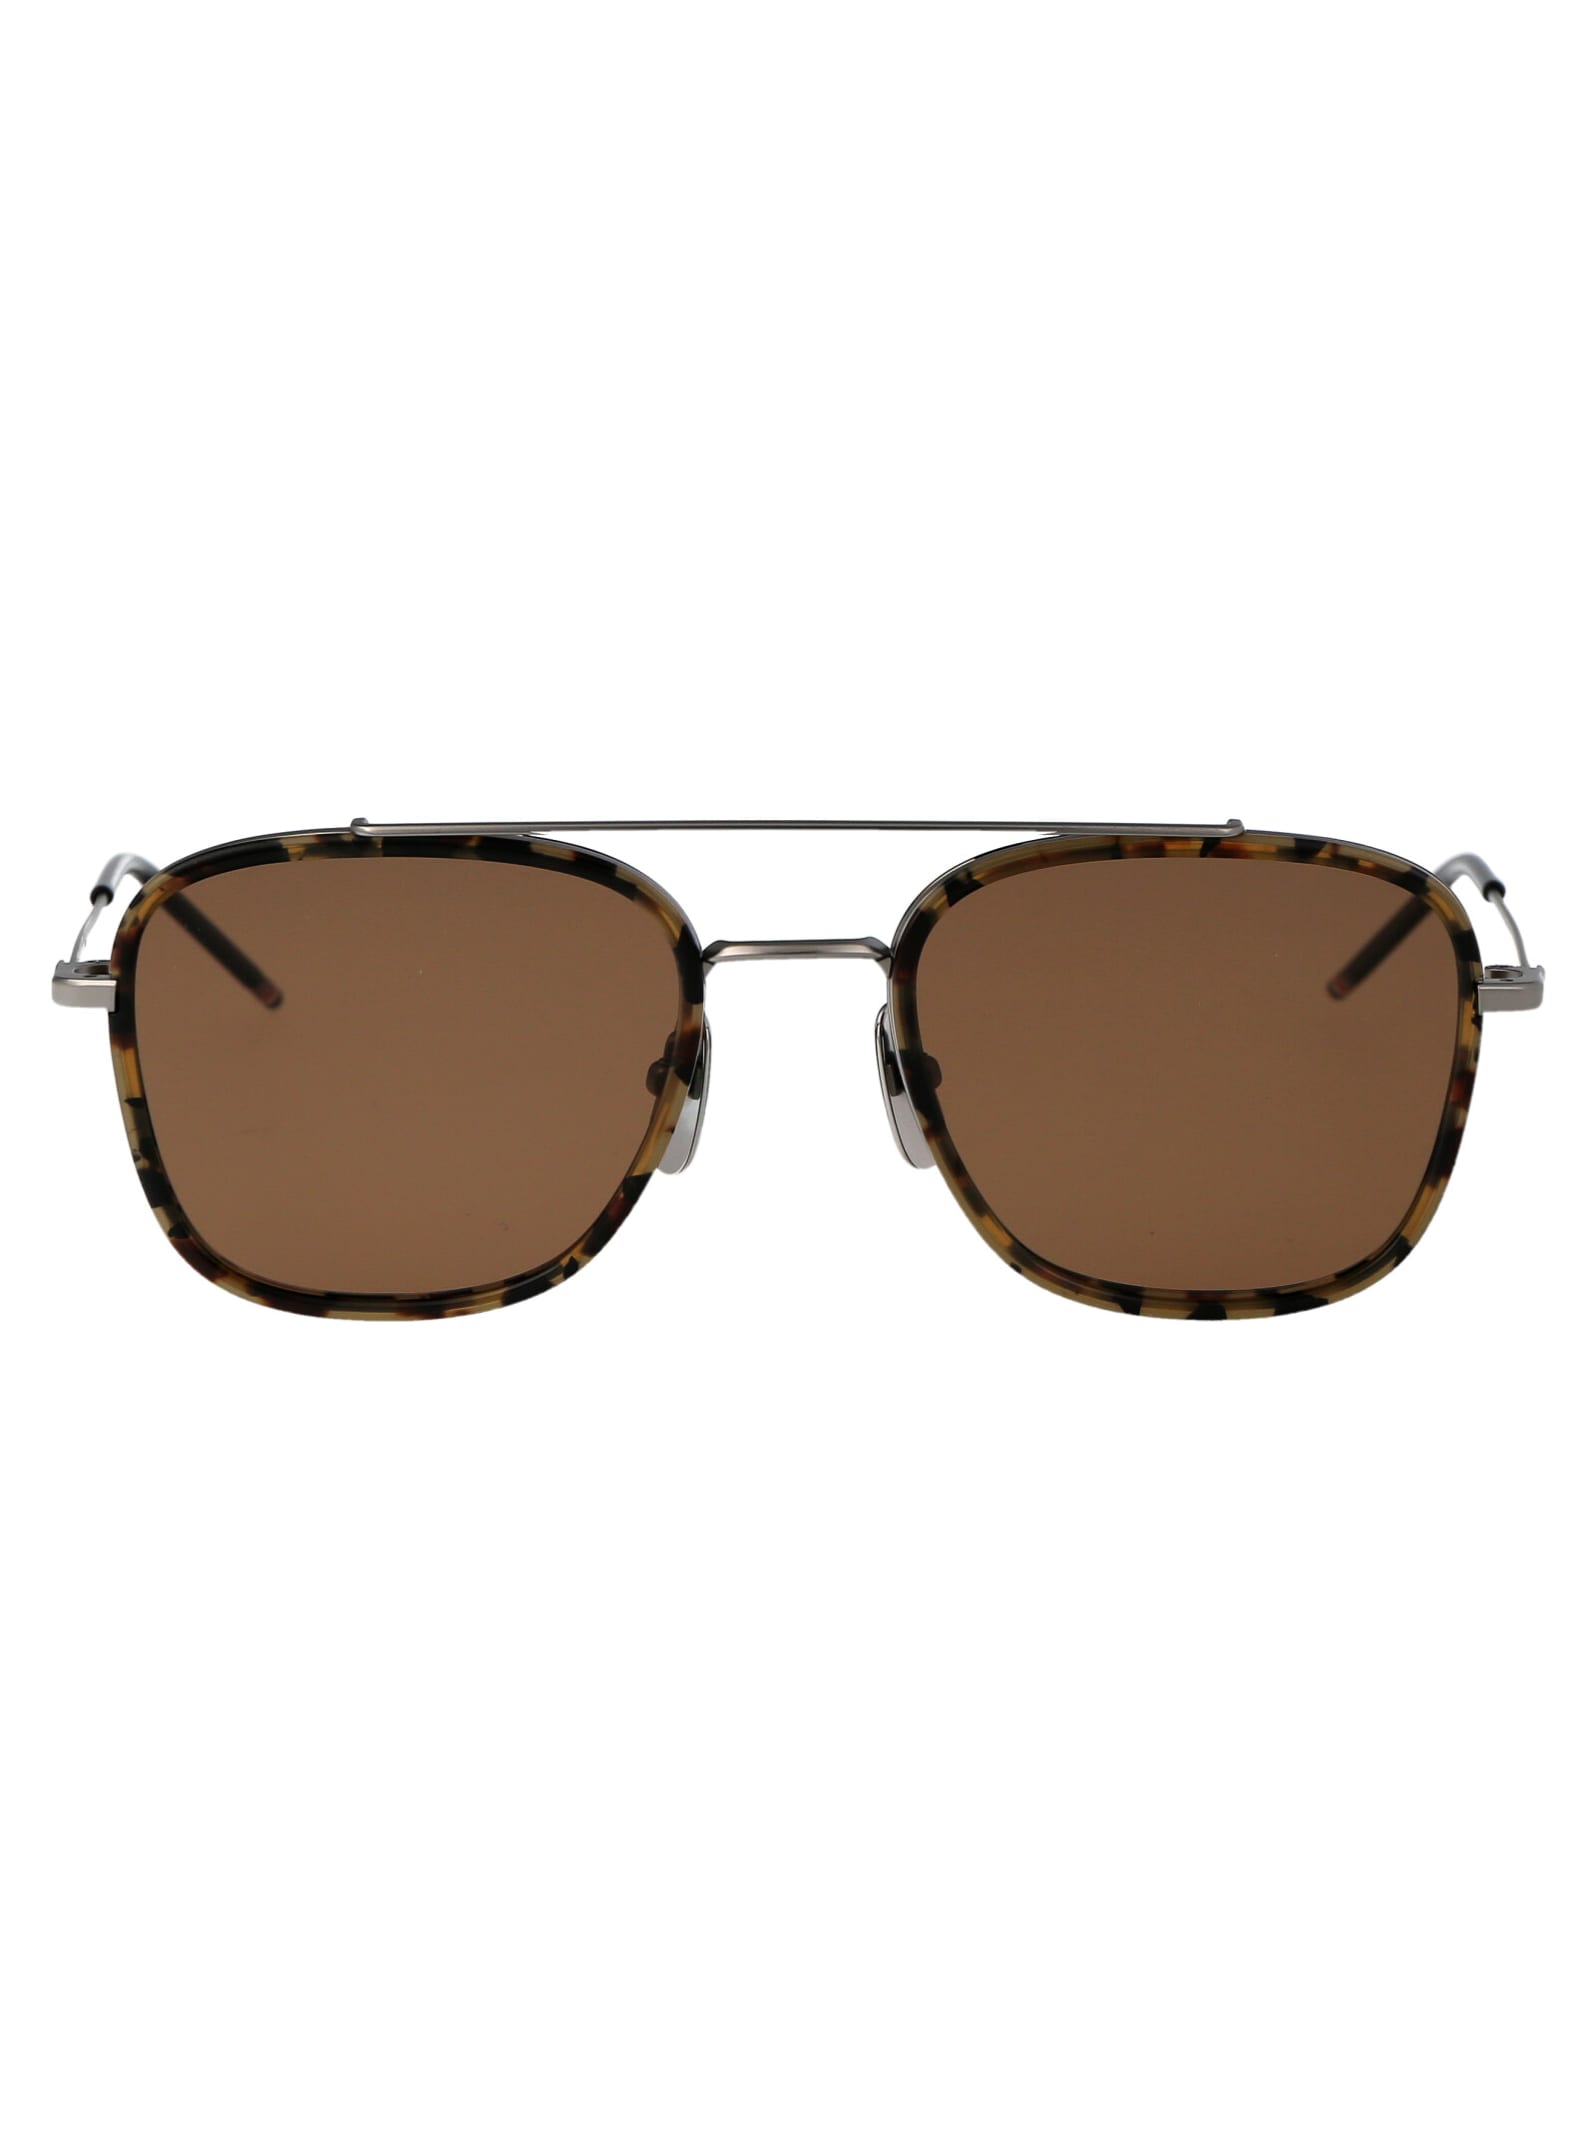 Ues800a-g0003-205-51 Sunglasses